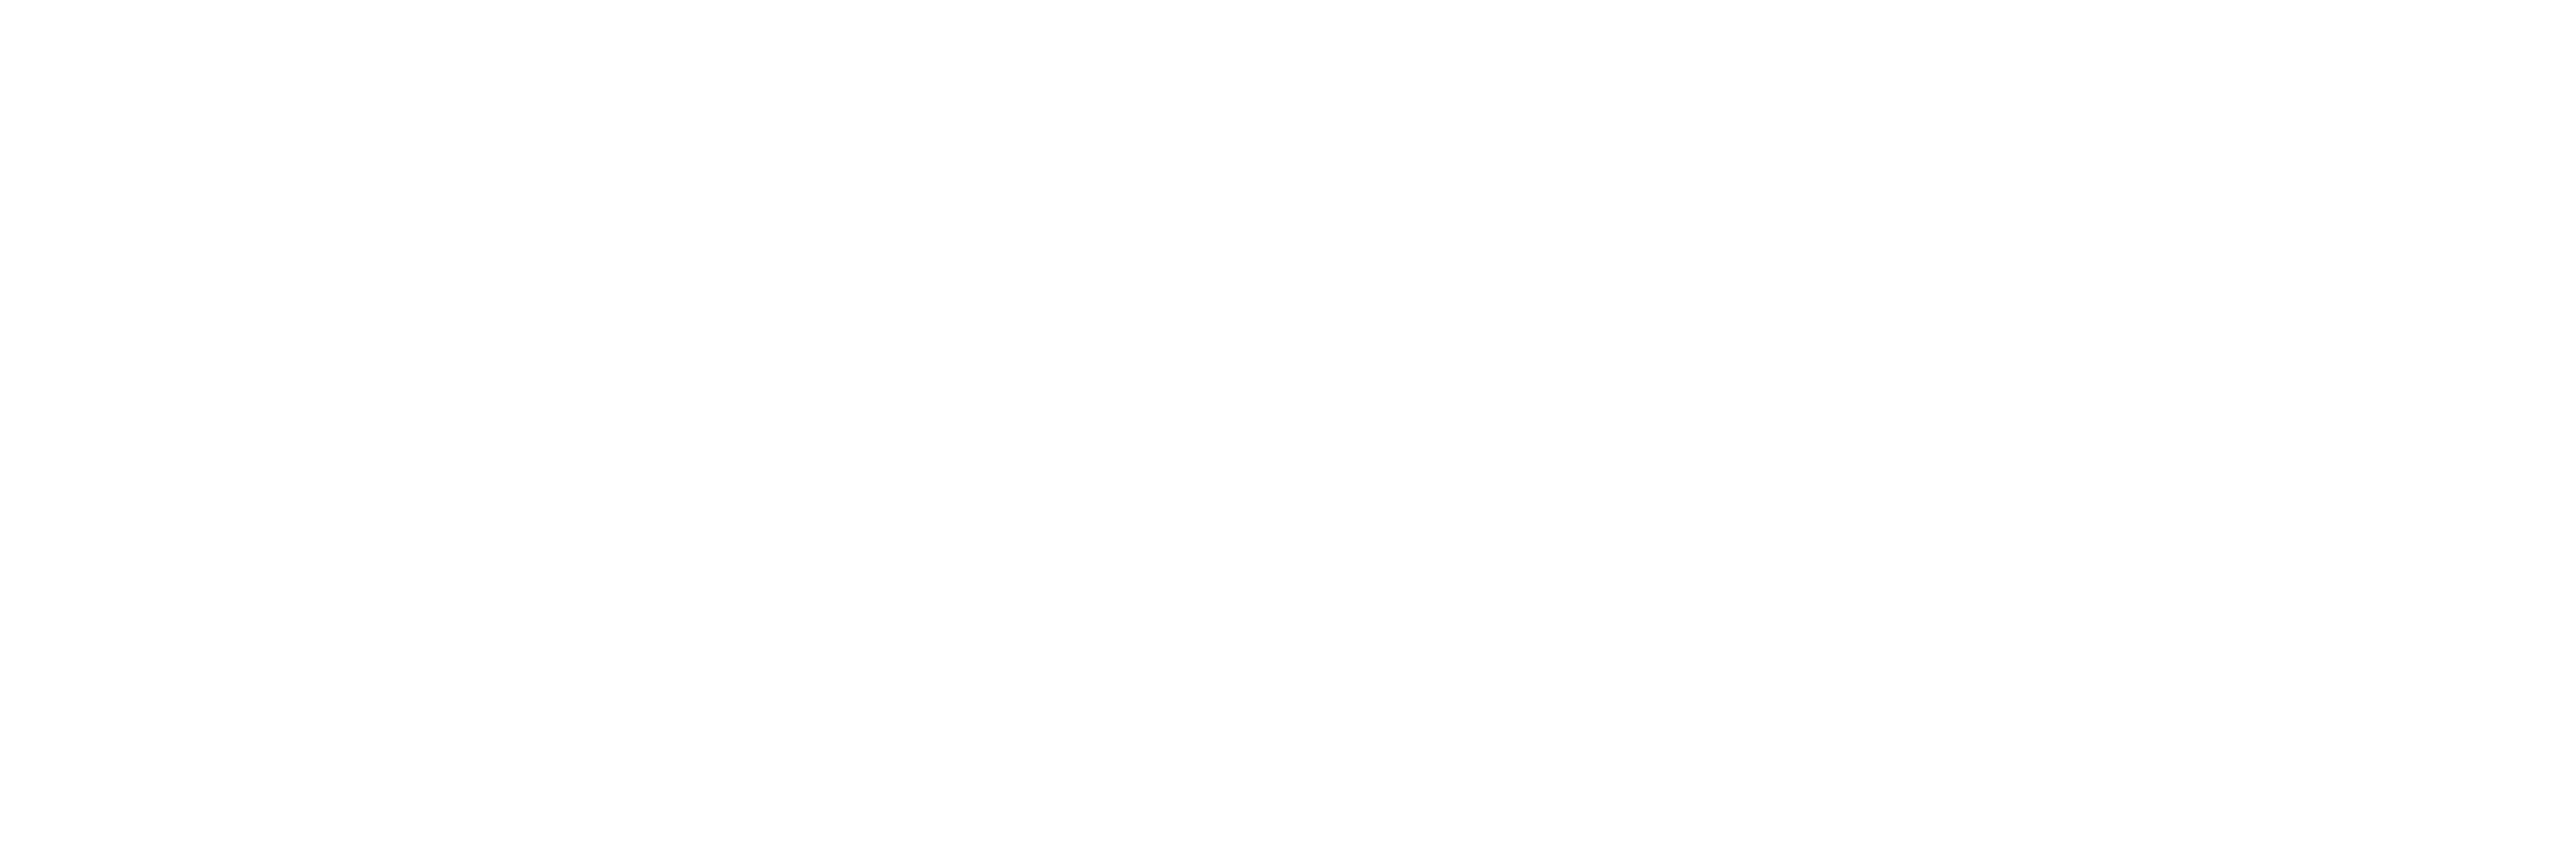 Boutique Erótica Boudoir